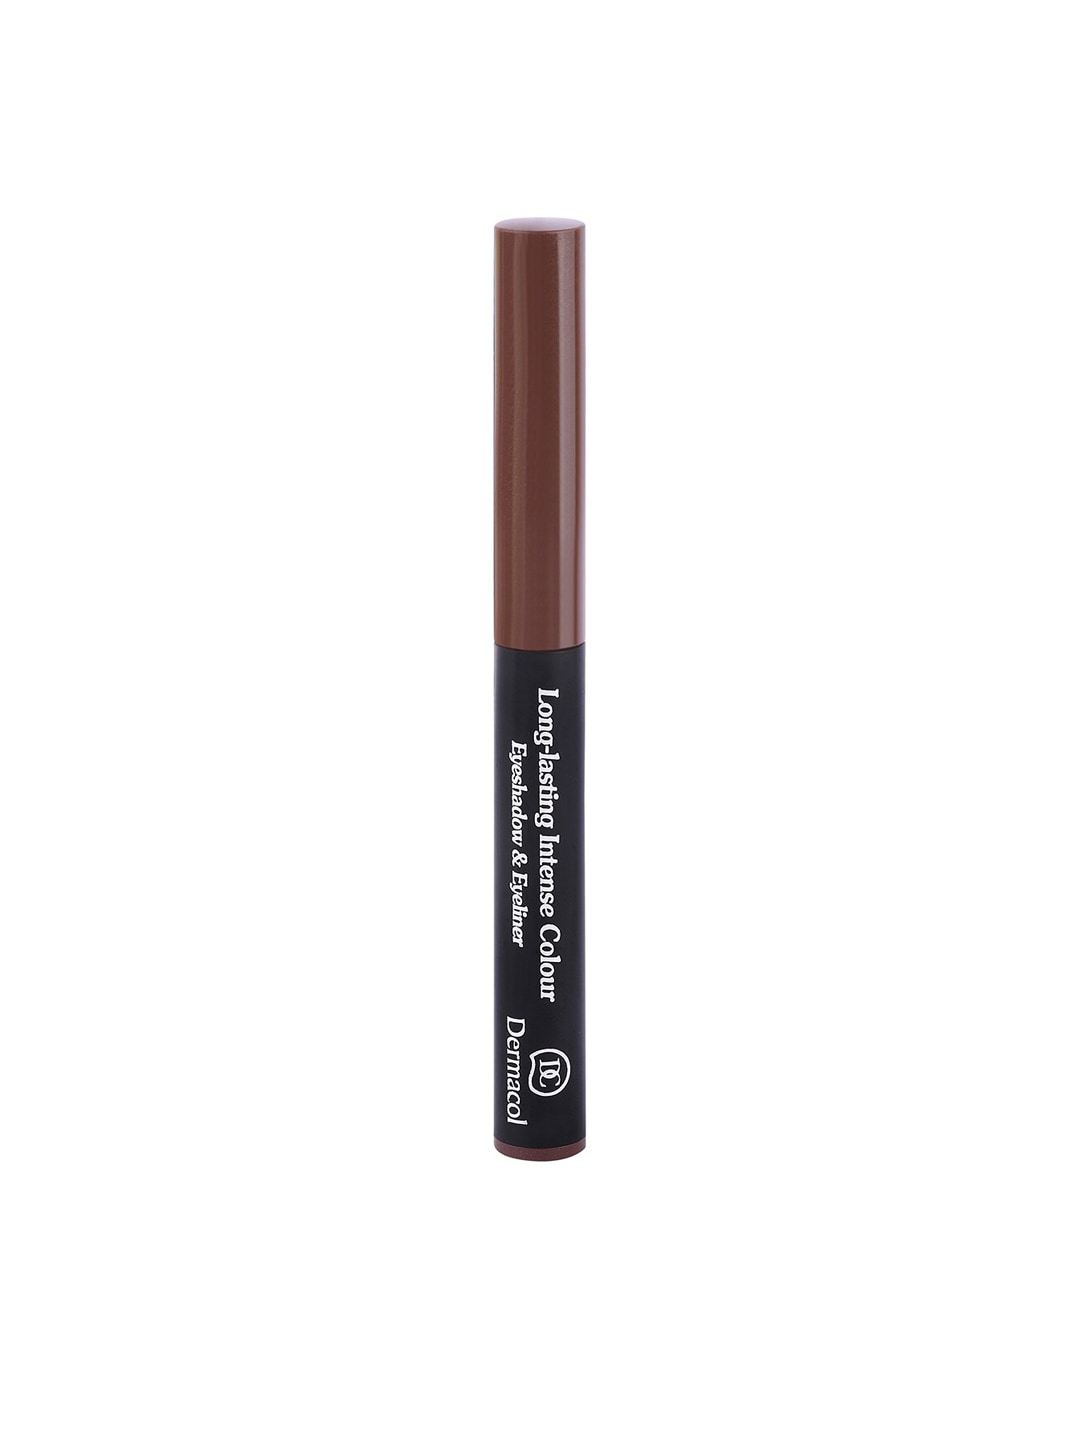 Dermacol Brown Long-Lasting Intense 2 in 1 Colour Eyeshadow & Eyeliner 3106 Price in India